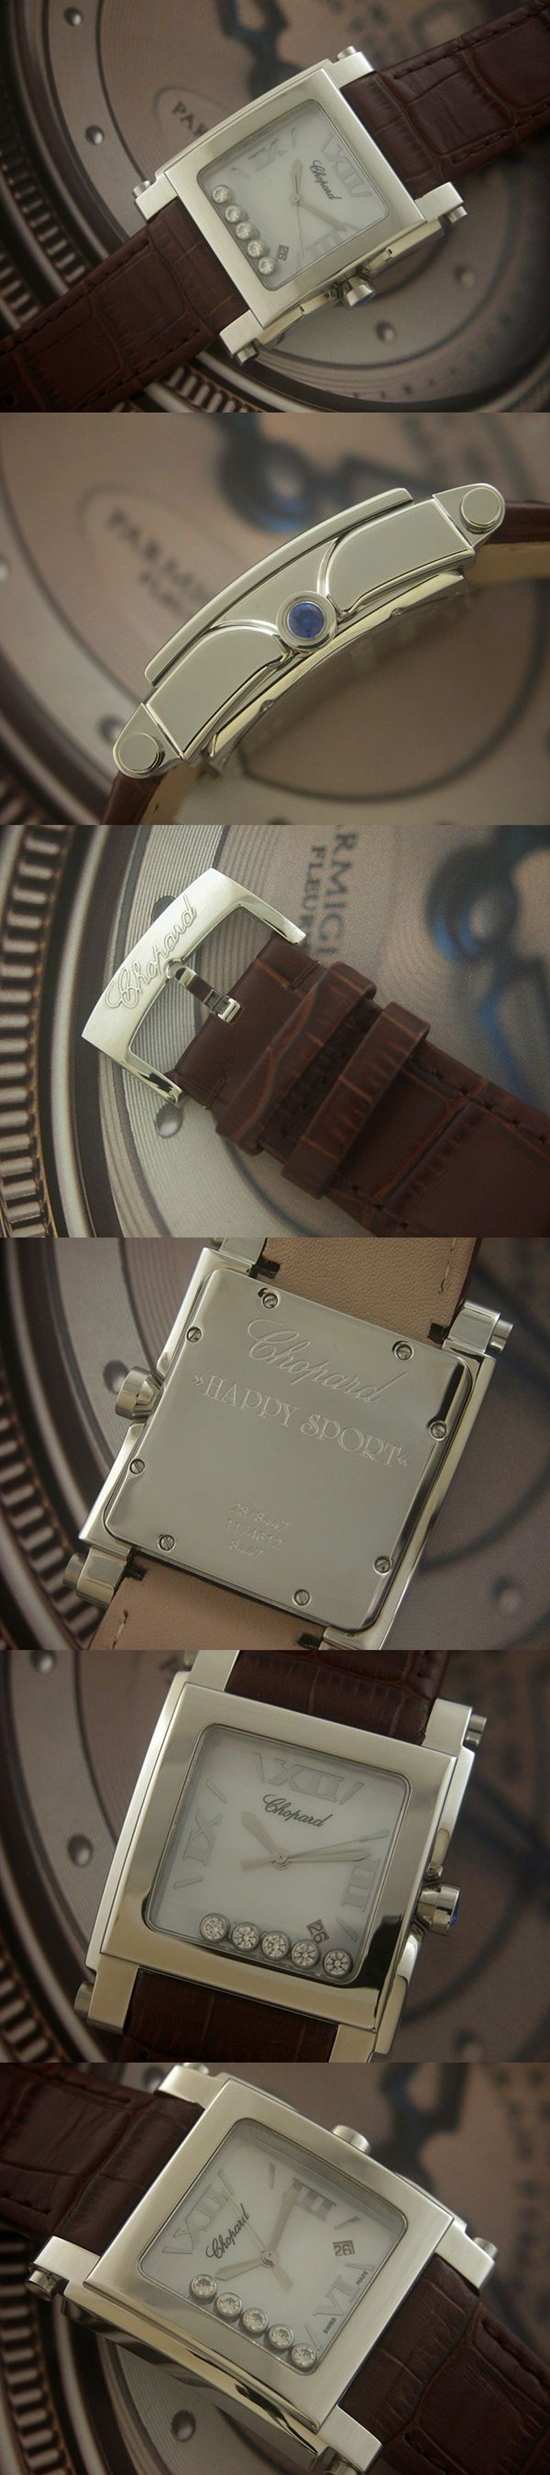 おしゃれなブランド時計がショパール-CHOPARD-ハッピースポーツ-278495-3001-af  男/女性用腕時計を提供します.